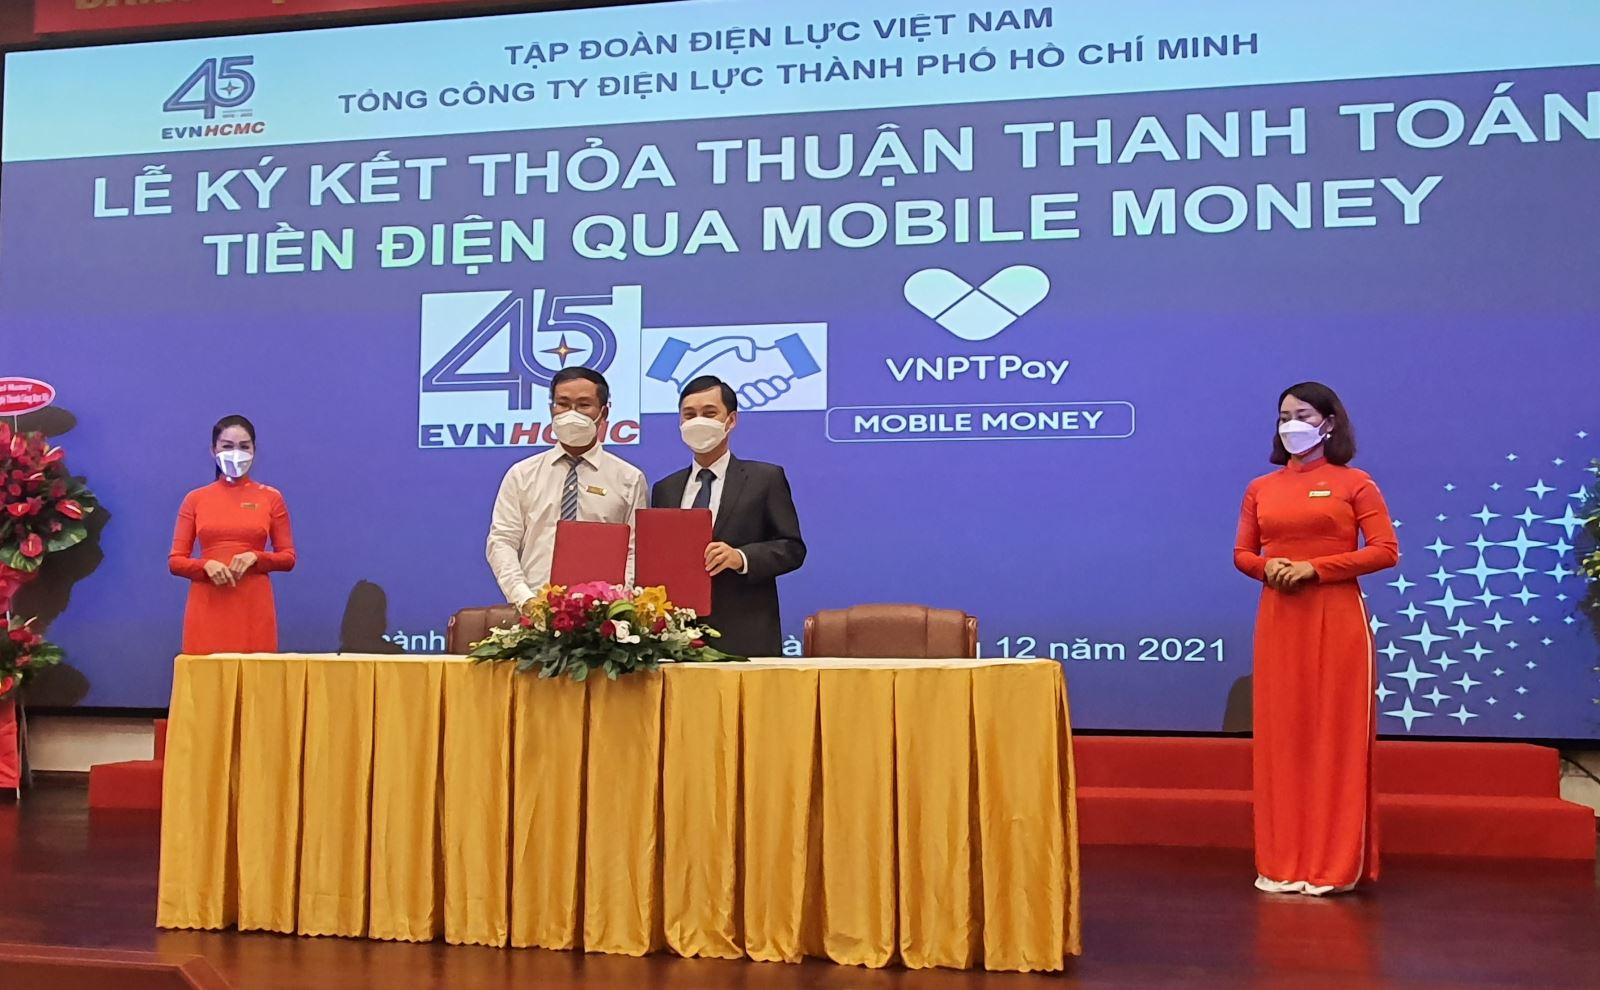 Đại diện EVNHCMC và VNPT ký kết thỏa thuận hợp tác thanh toán tiền điện qua Mobile Money